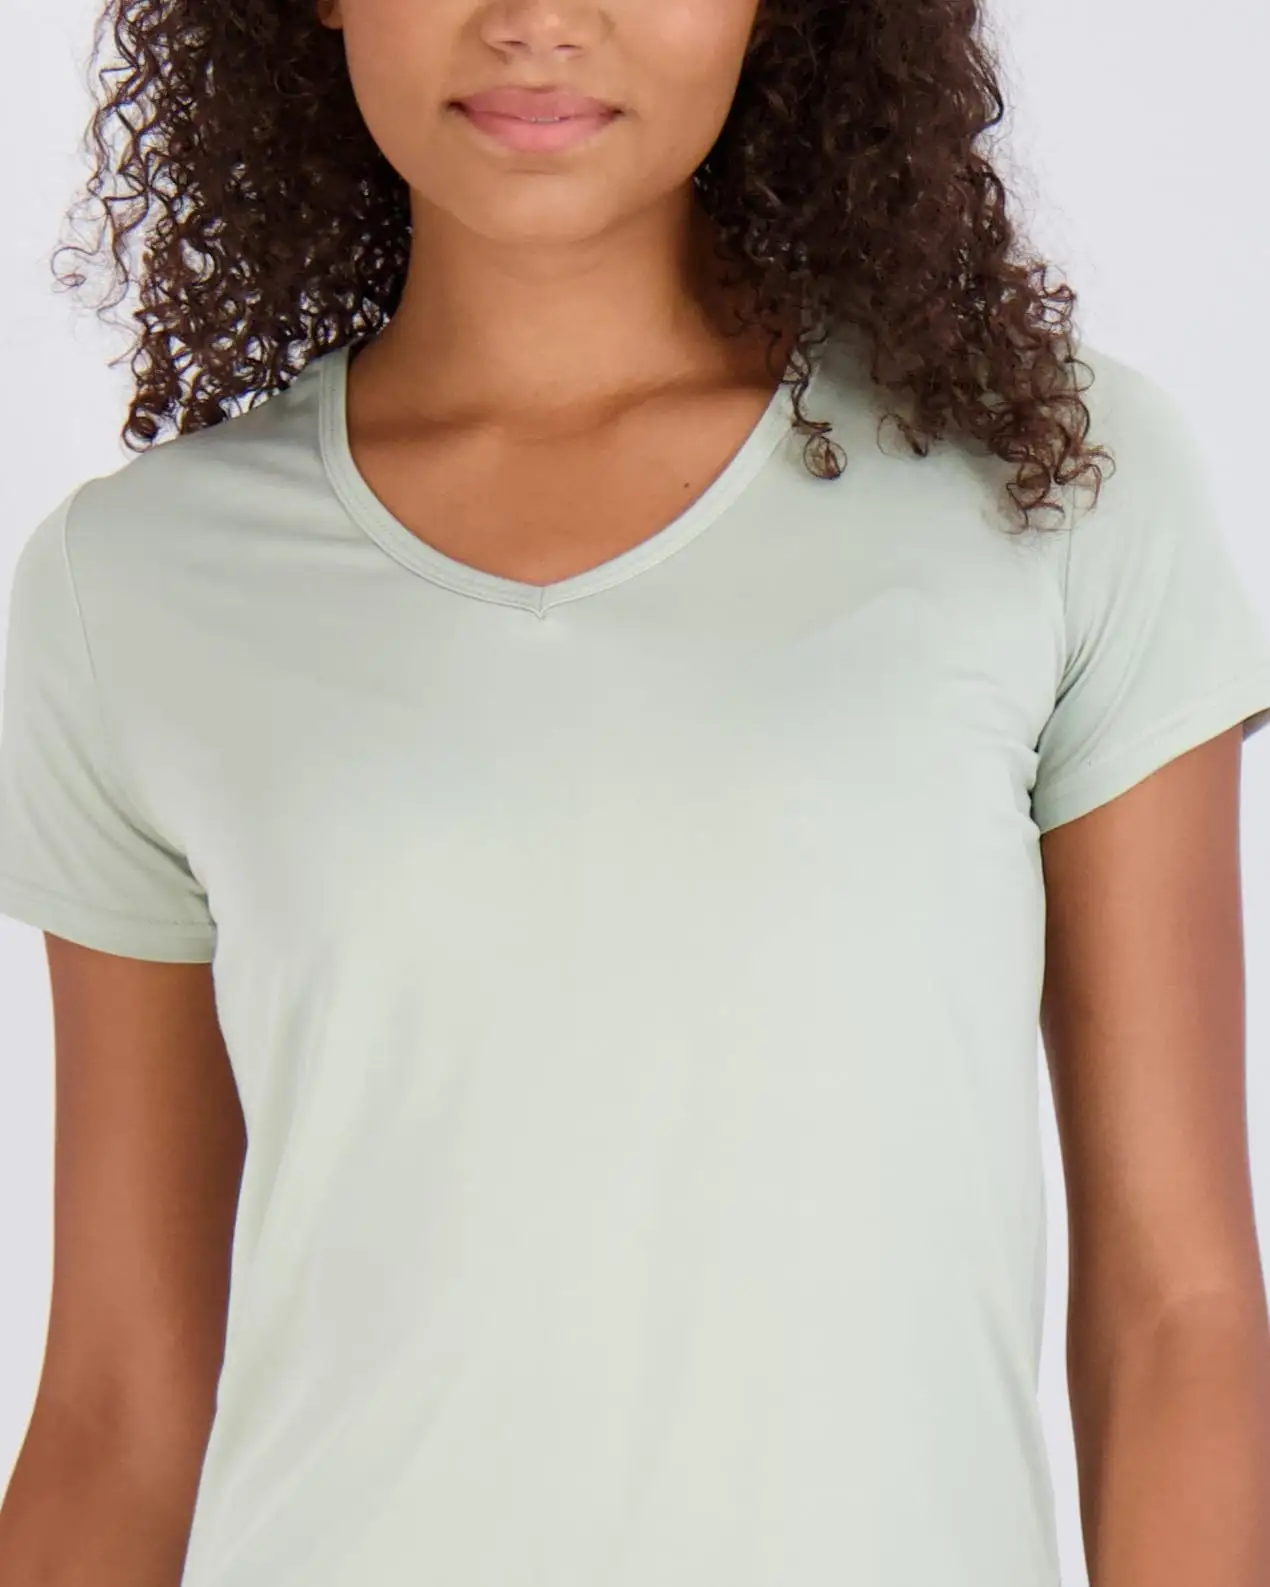 Düz düz renk kaliteli ve düşük fiyat doğrudan fabrika kadınlar özel Logo ile boy v yaka T-shirt